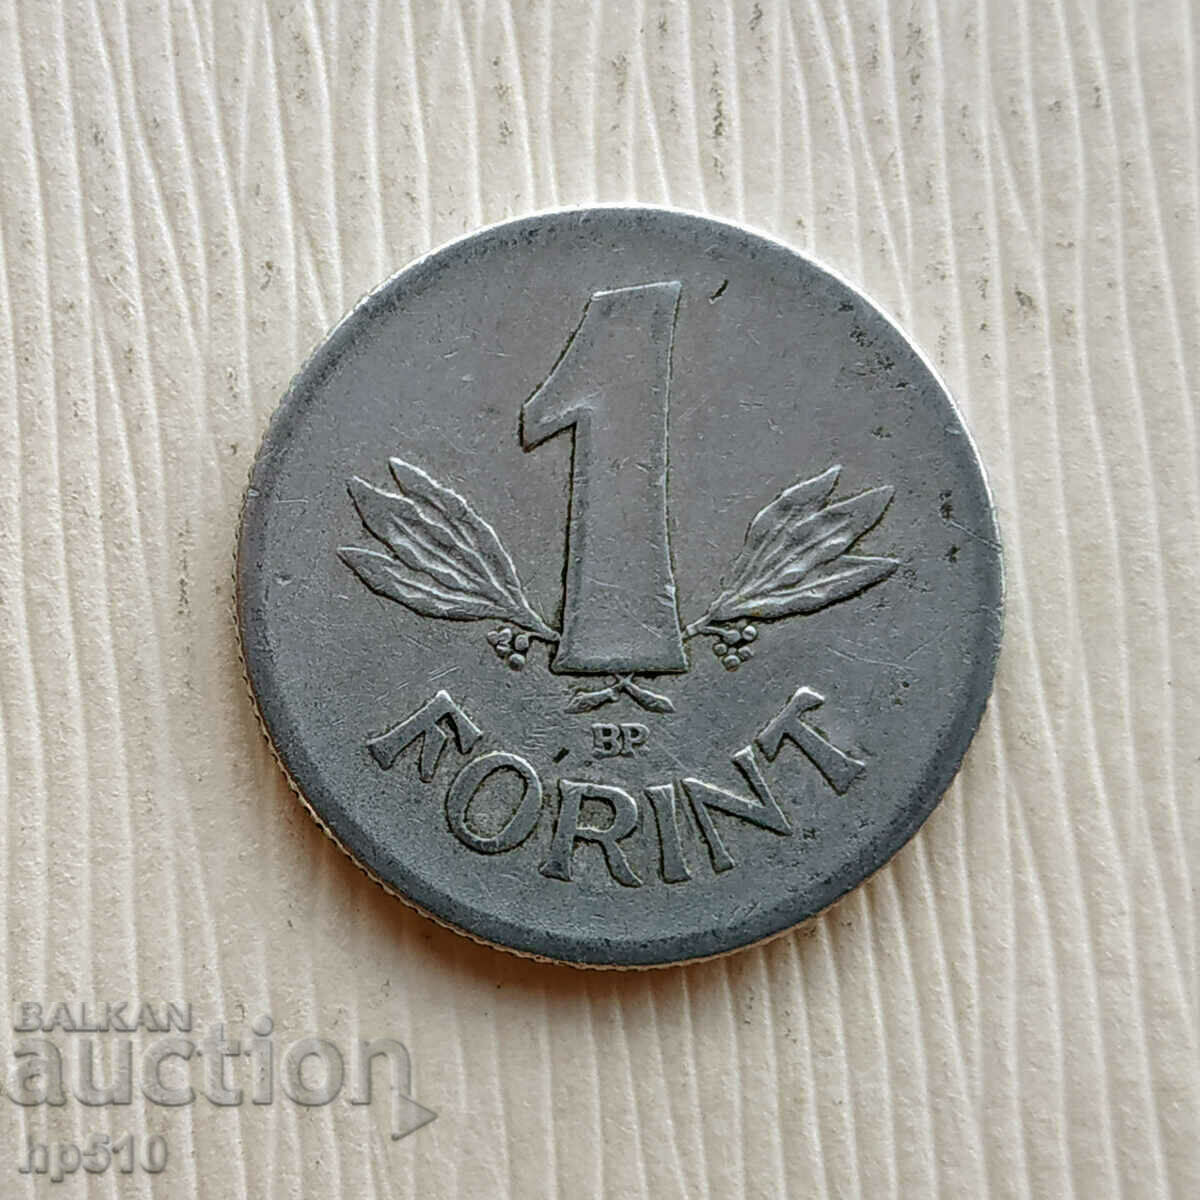 Hungary 1 forint 1969 / Hungary 1 Forint 1969